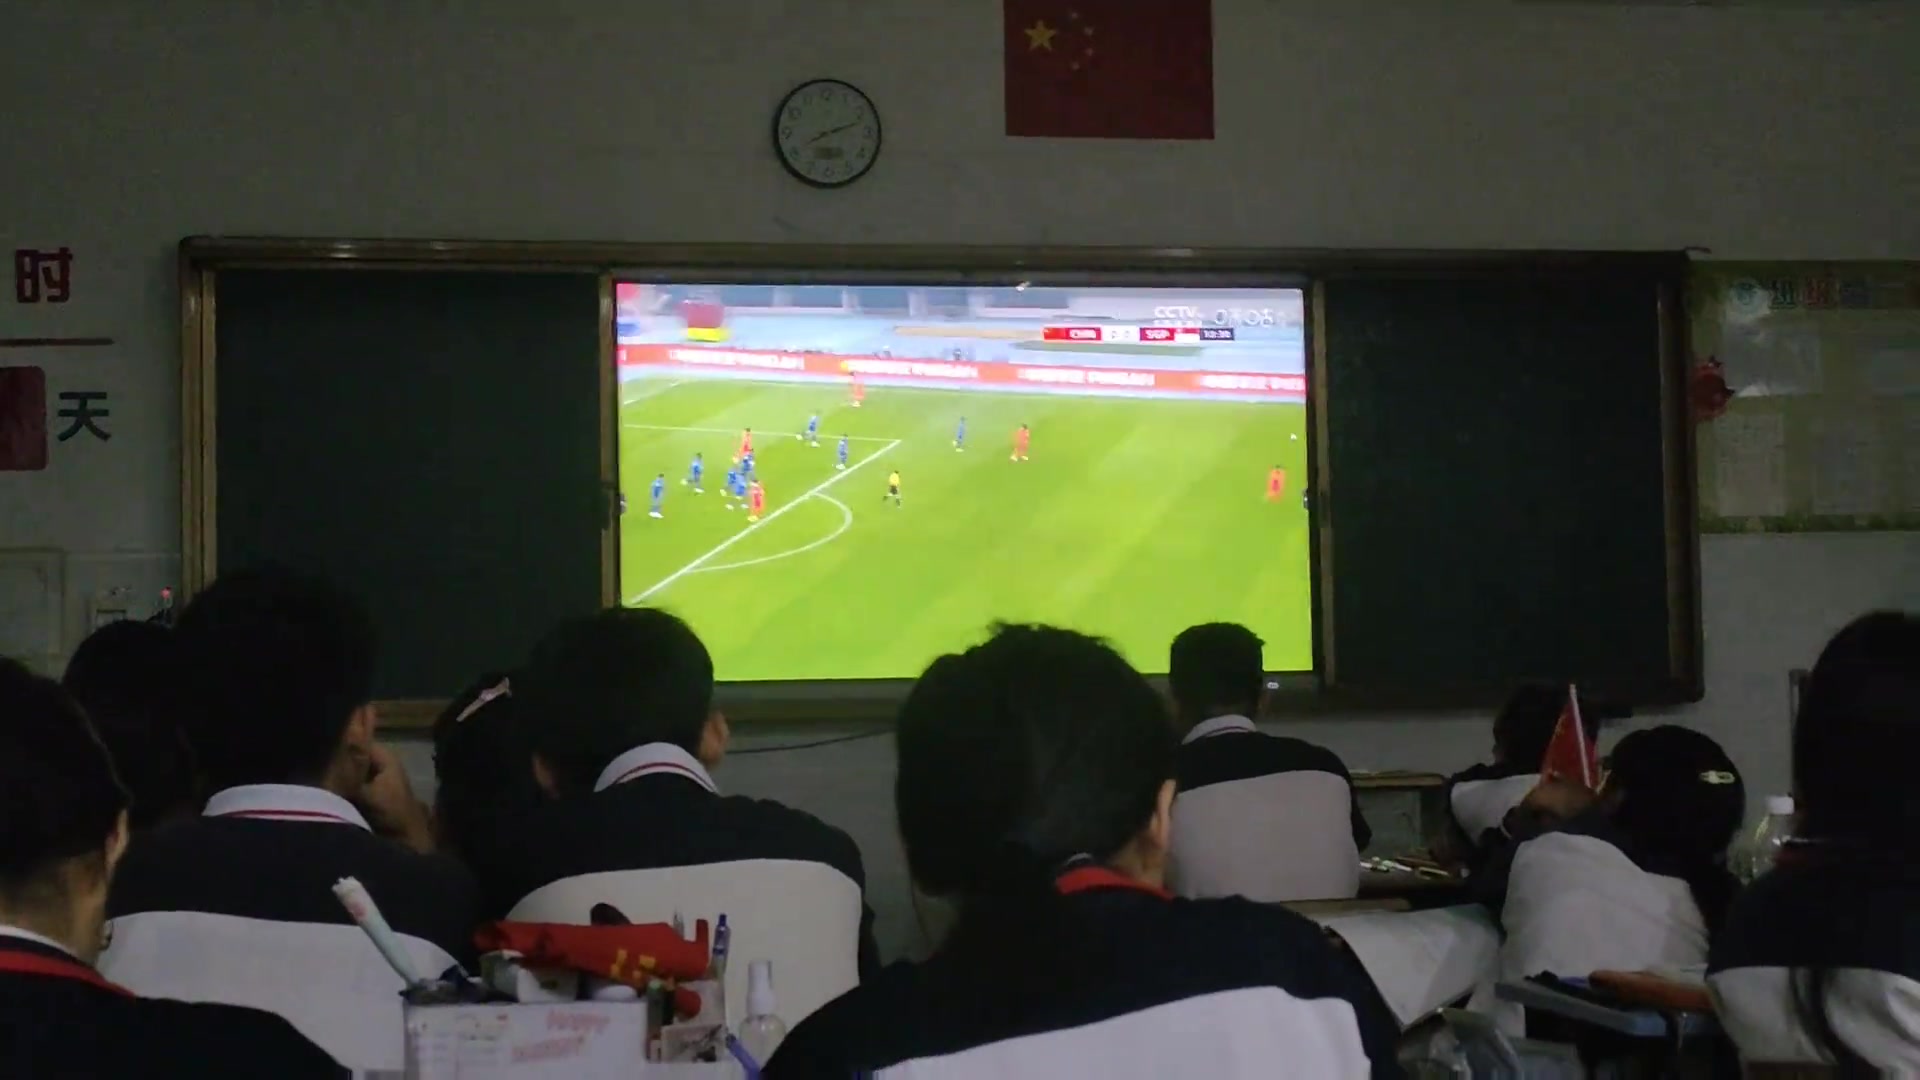 教育的意义不仅局限于书本！中学老师给学生看国足比赛